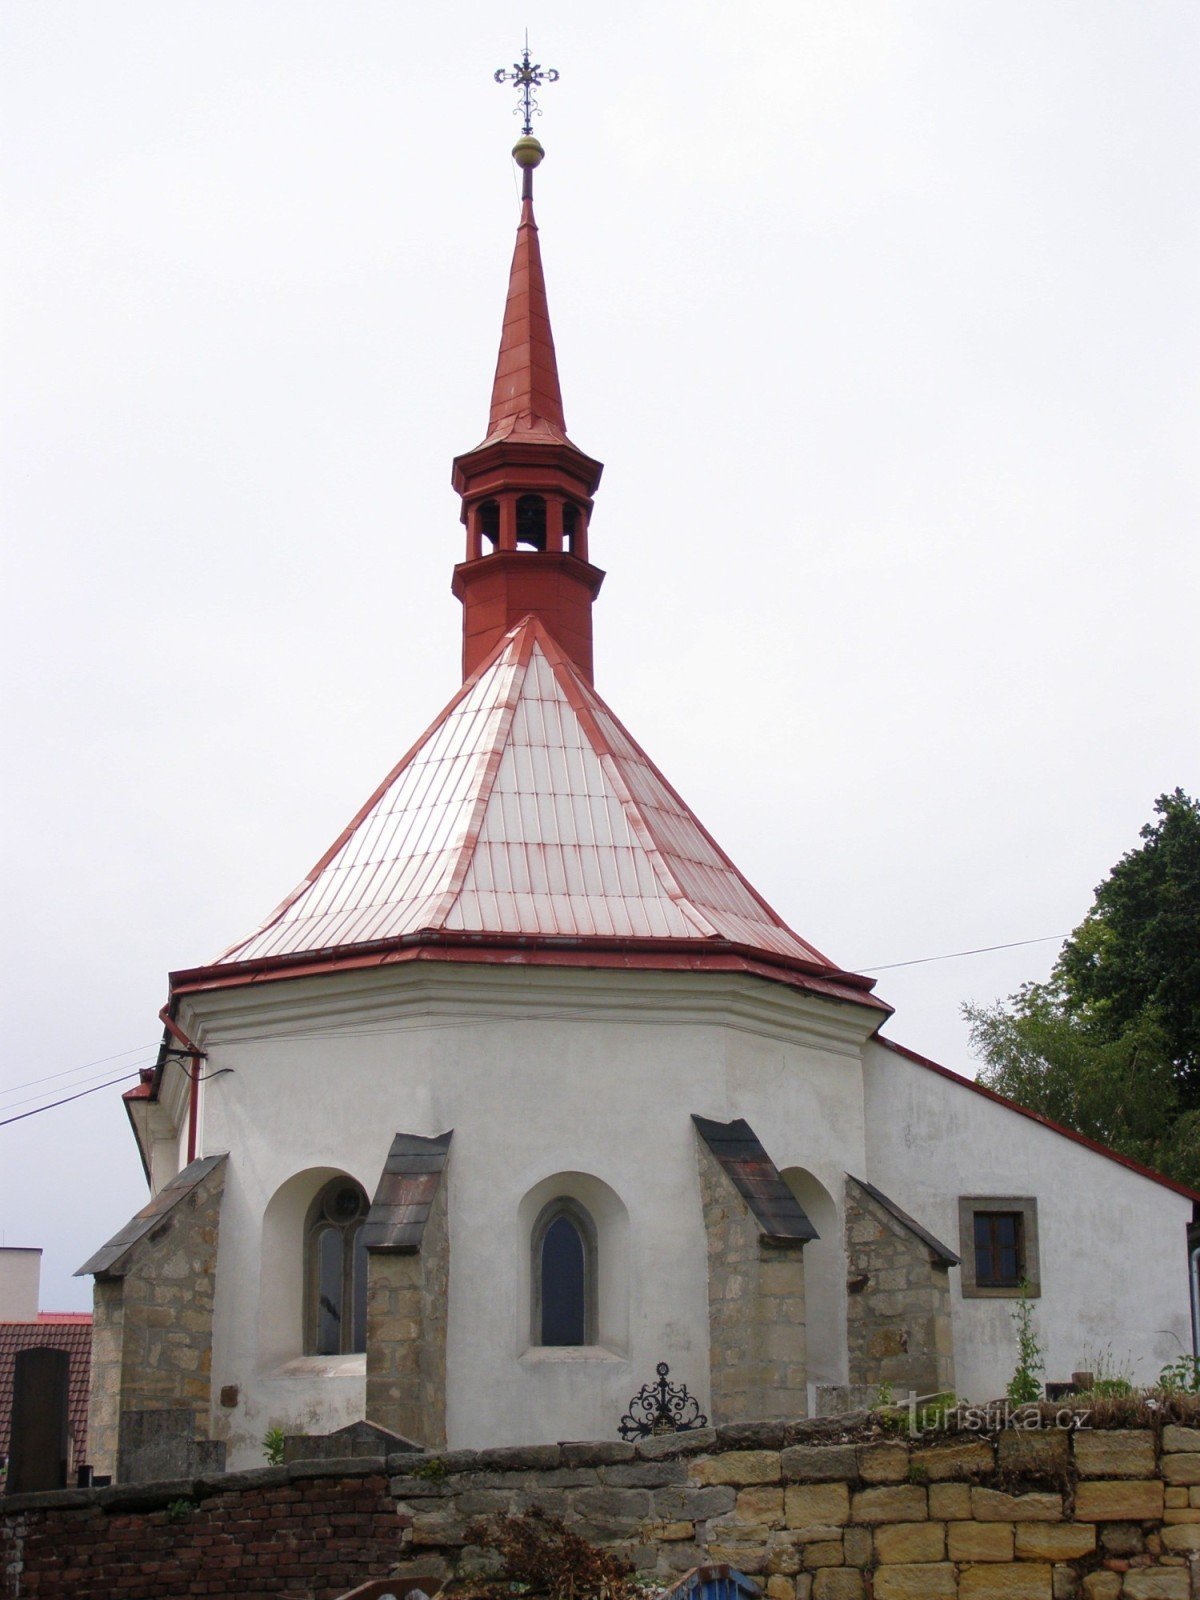 Mladějov - a Szent Giljí templom a harangtoronnyal